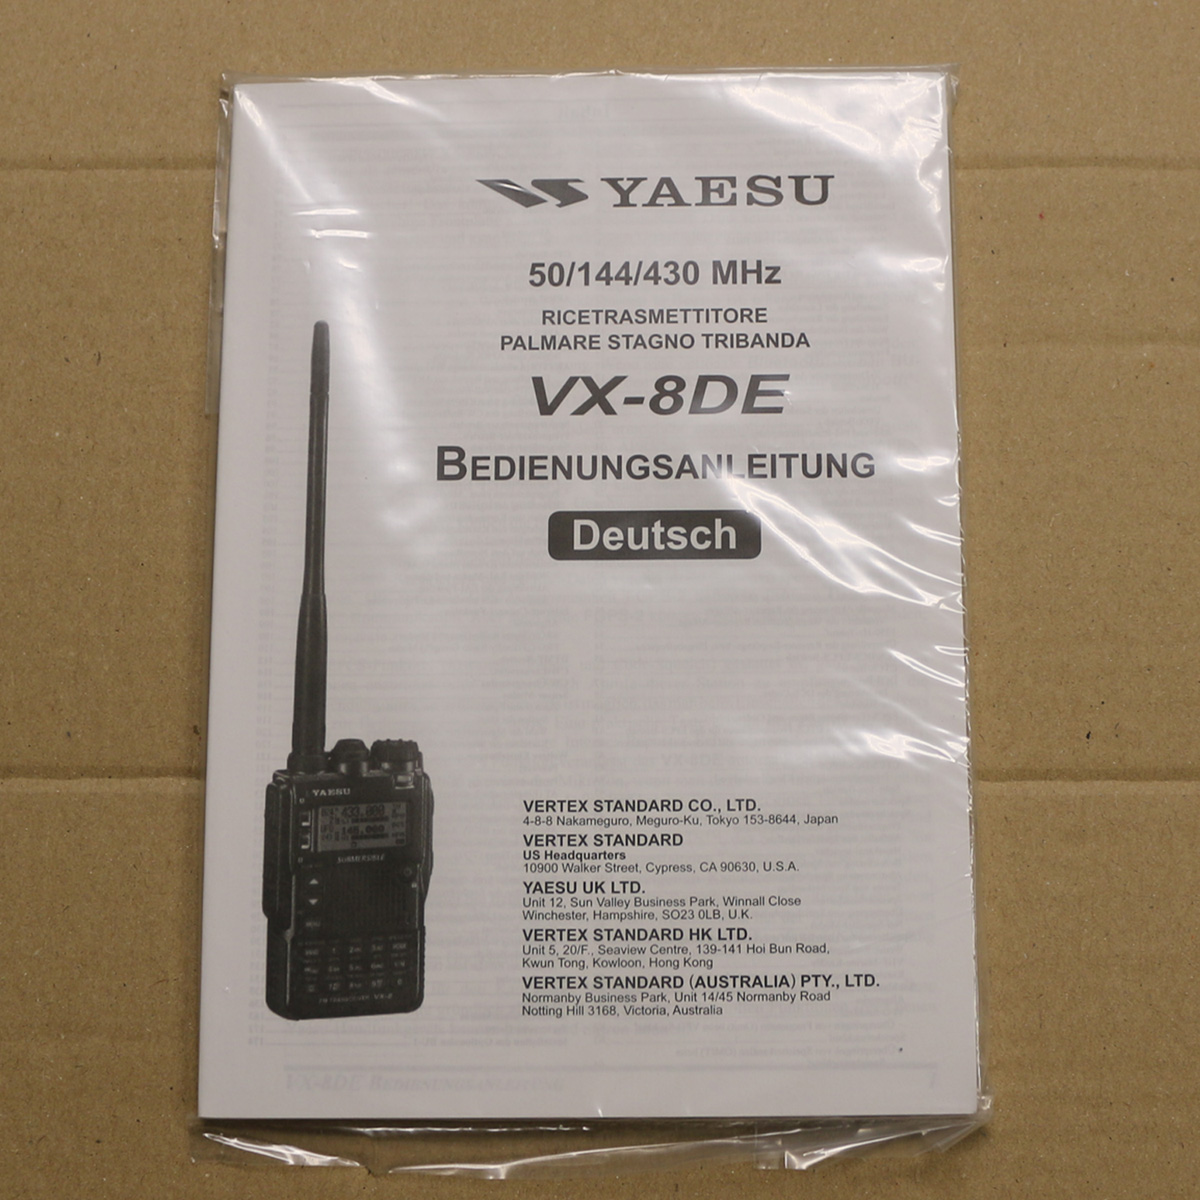 Yaesu VX-8DE Bedienungsanleitung